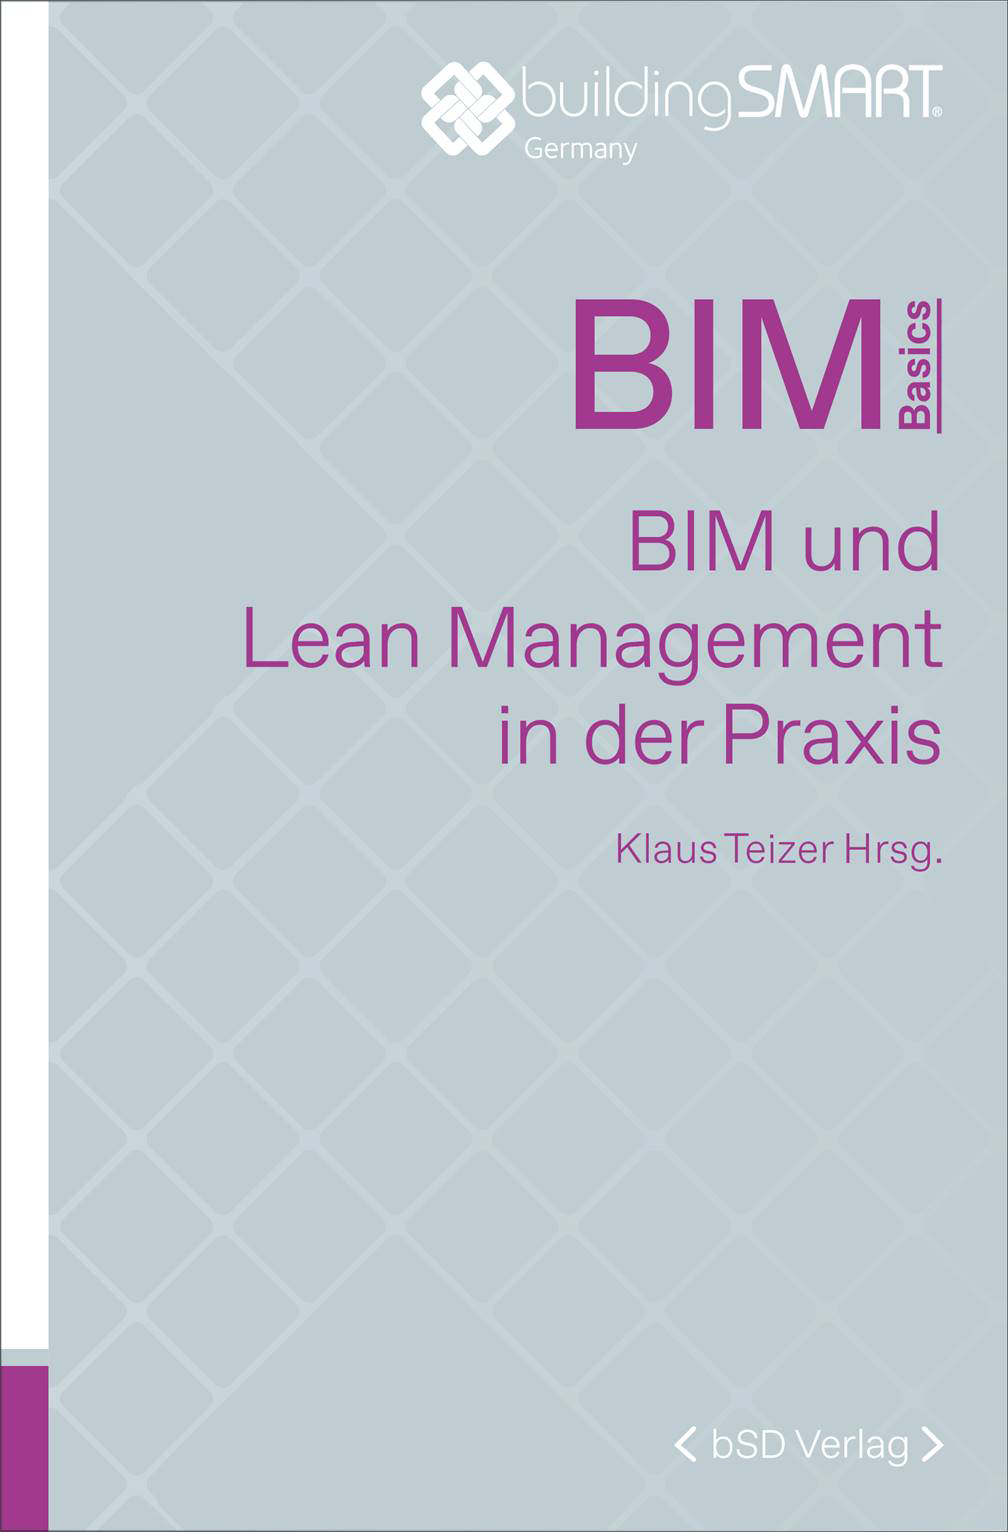 bSD Verlag/BIM Basics: BIM und Lean-Management in der Praxis